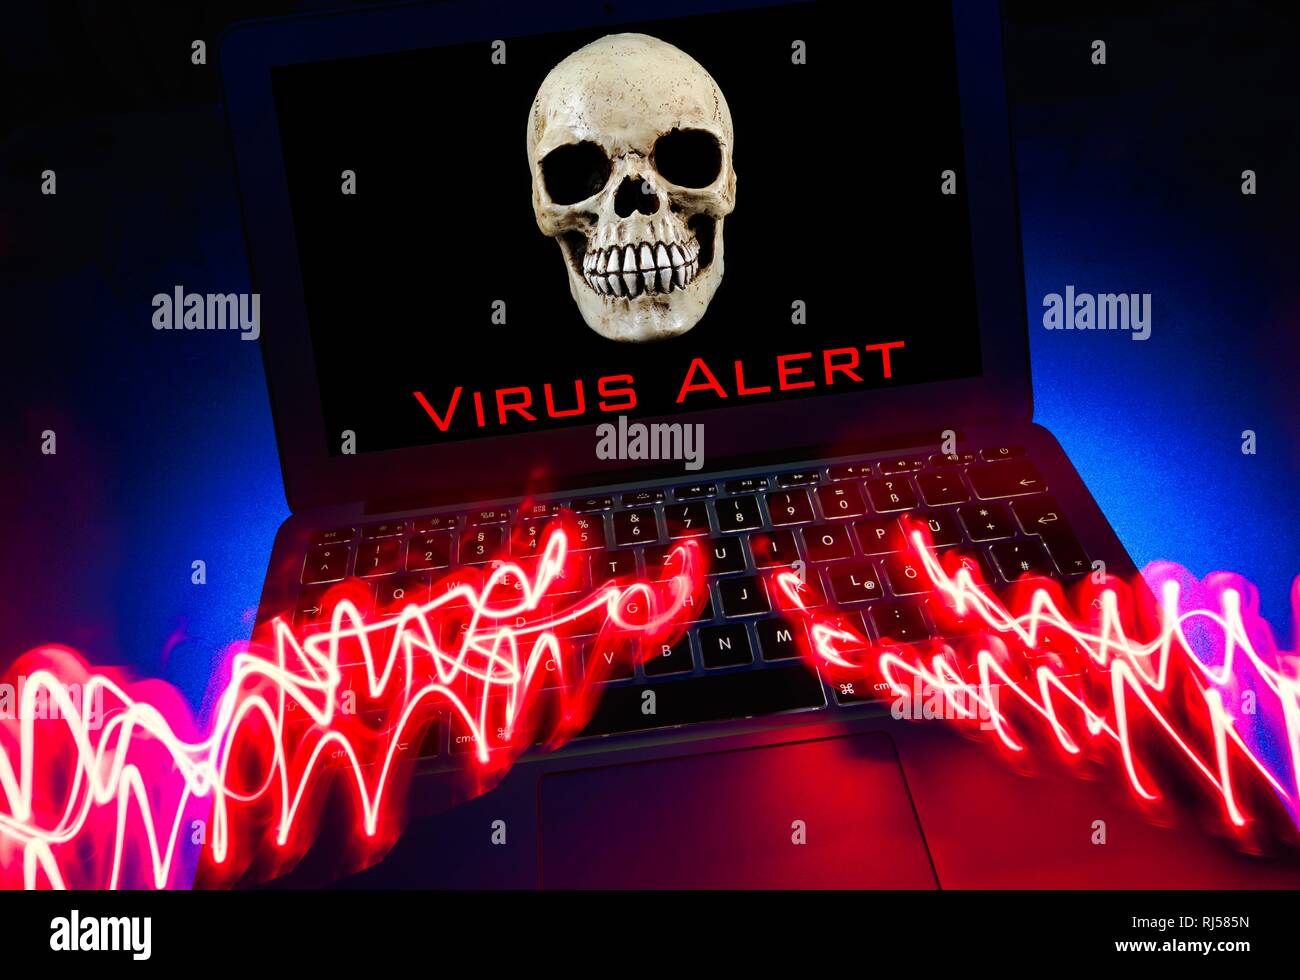 Portátil con Calavera y huesos cruzados en la pantalla, el símbolo de la imagen de alarma de malware, virus, delitos informáticos, protección de datos, Alemania Foto de stock